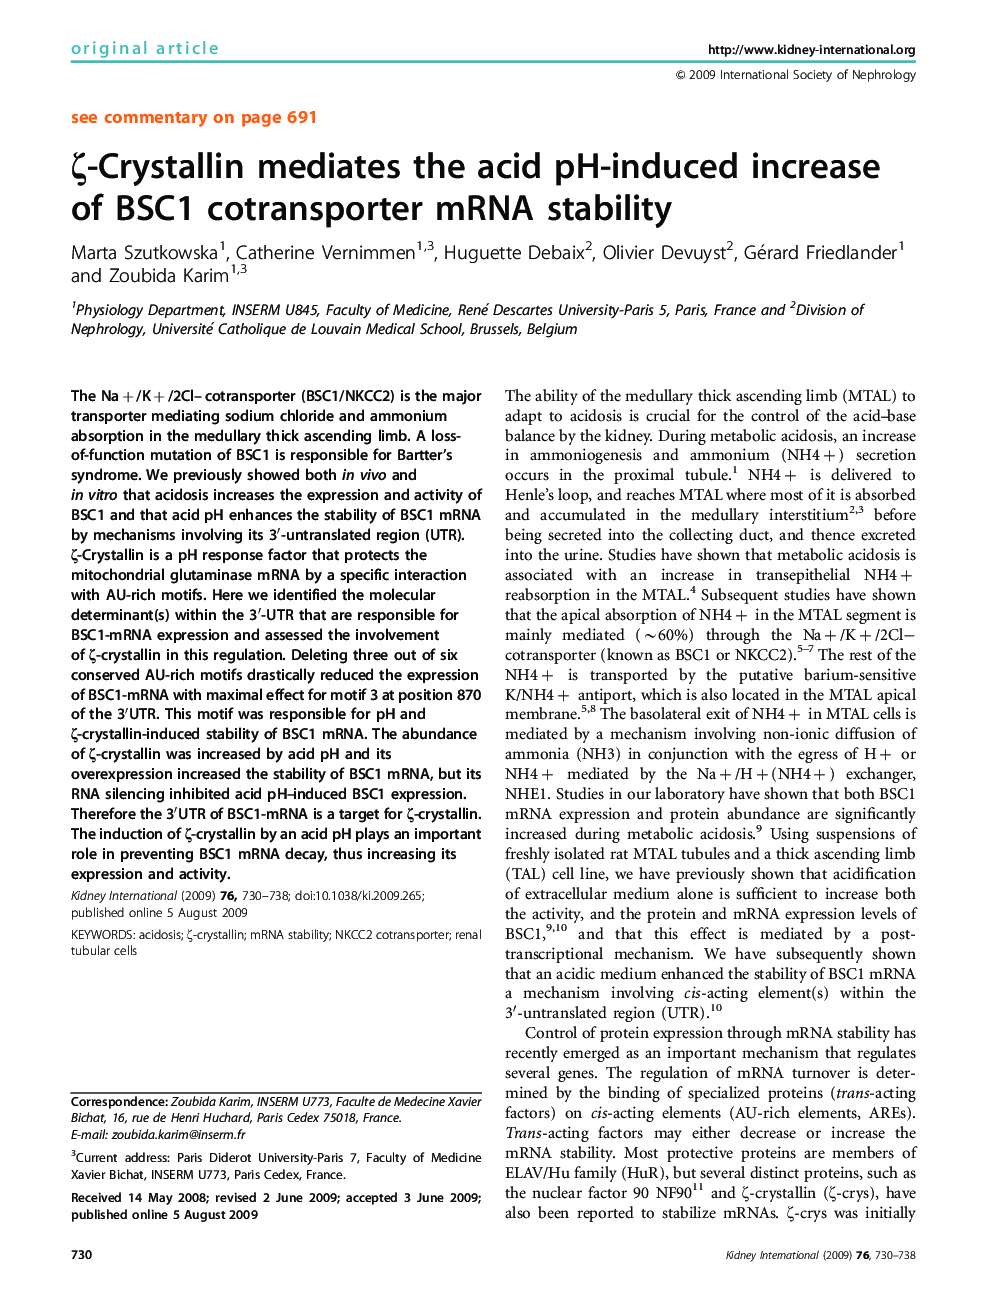 ζ-Crystallin mediates the acid pH-induced increase of BSC1 cotransporter mRNA stability